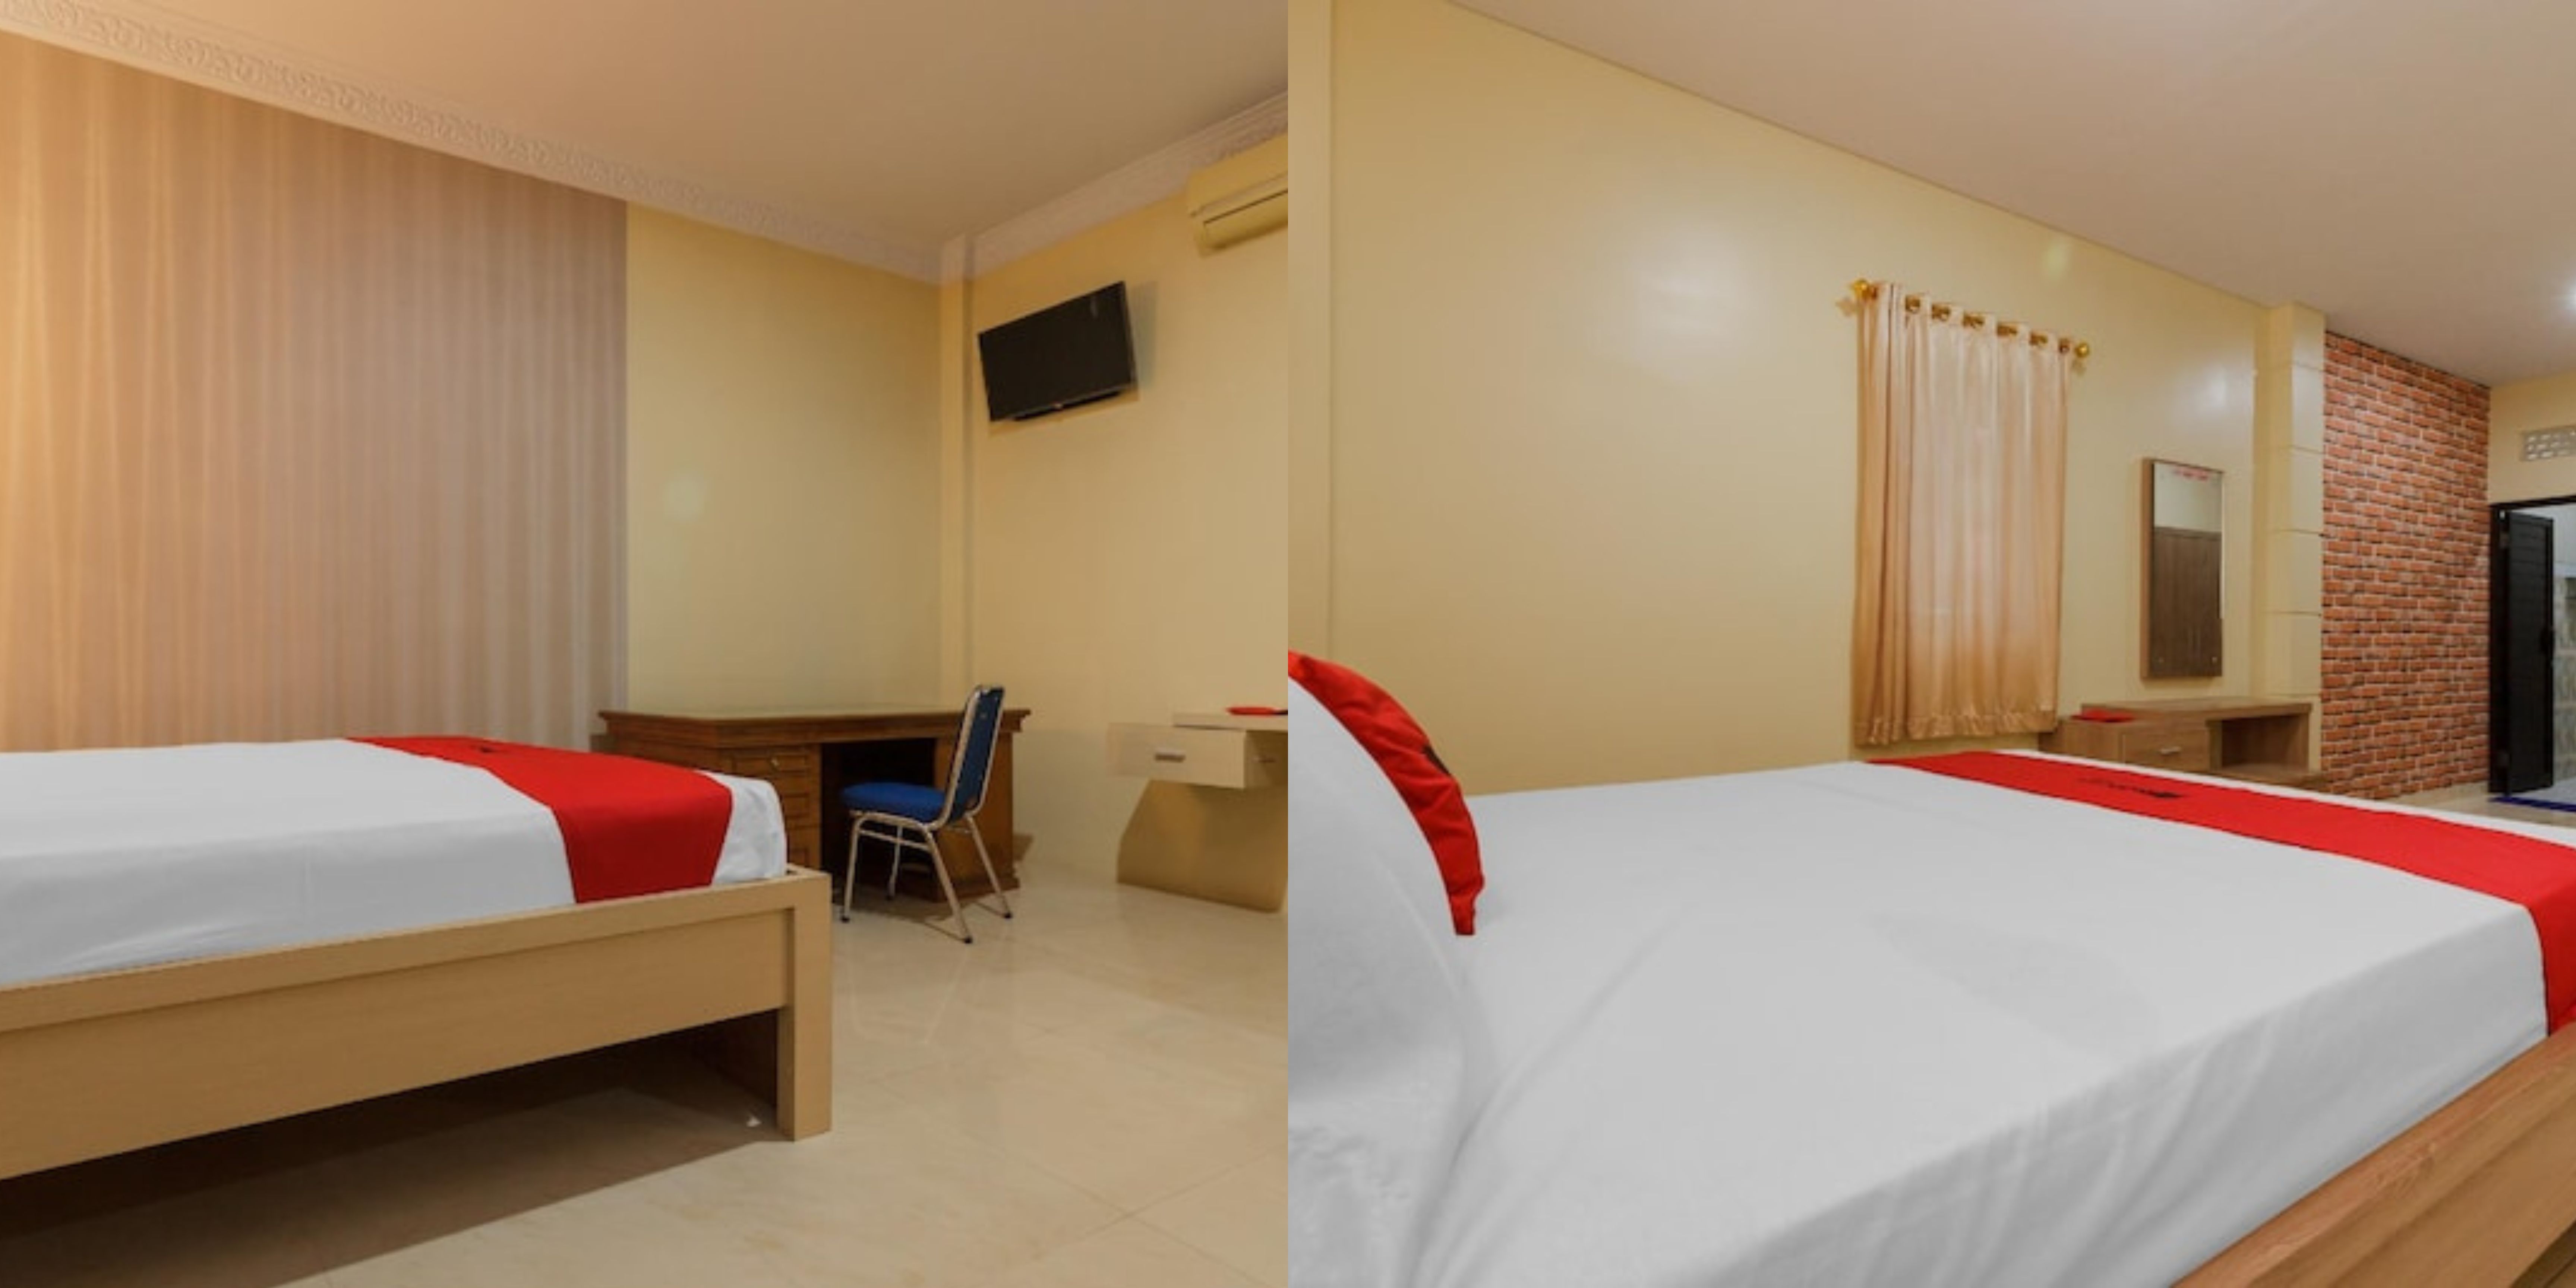 Kolase foto kamar hotel di Kota Manado, bersih dan nyaman saat menginap adalah salah satu alasan jadi pilihan staycation